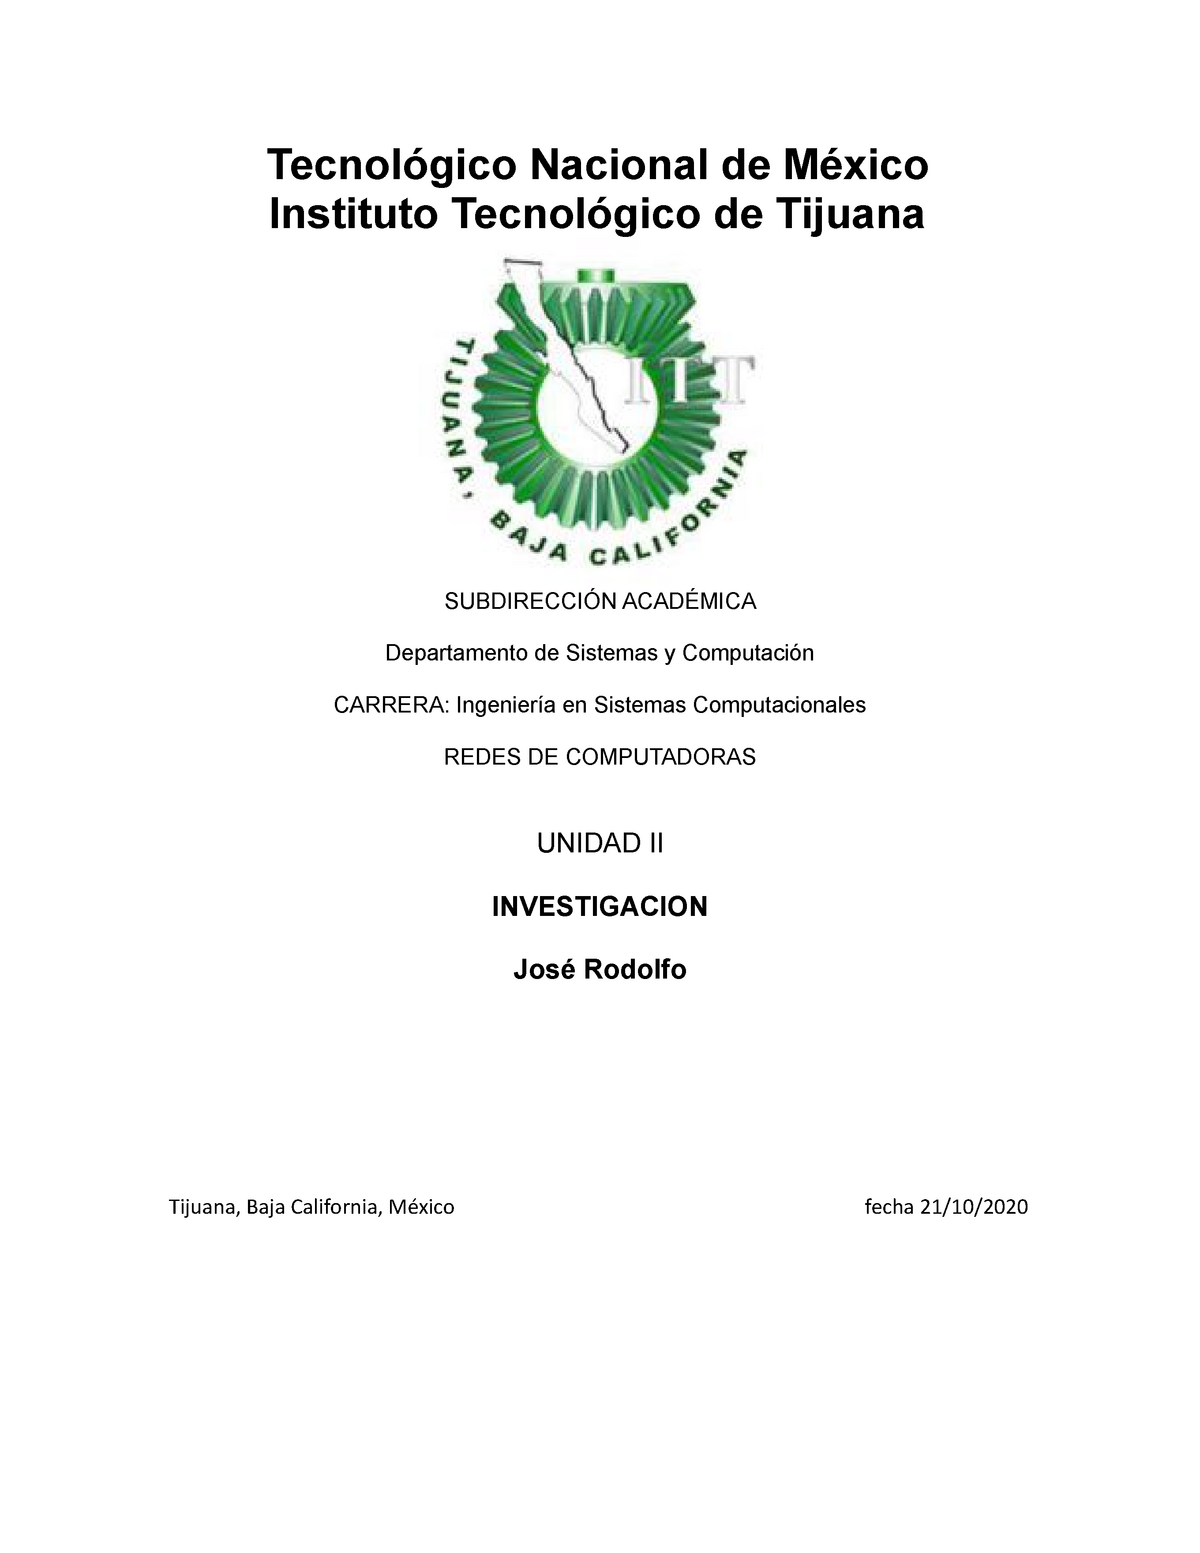 IEEE-ISO-ANSI - Tarea - Tecnológico Nacional de México Instituto ...